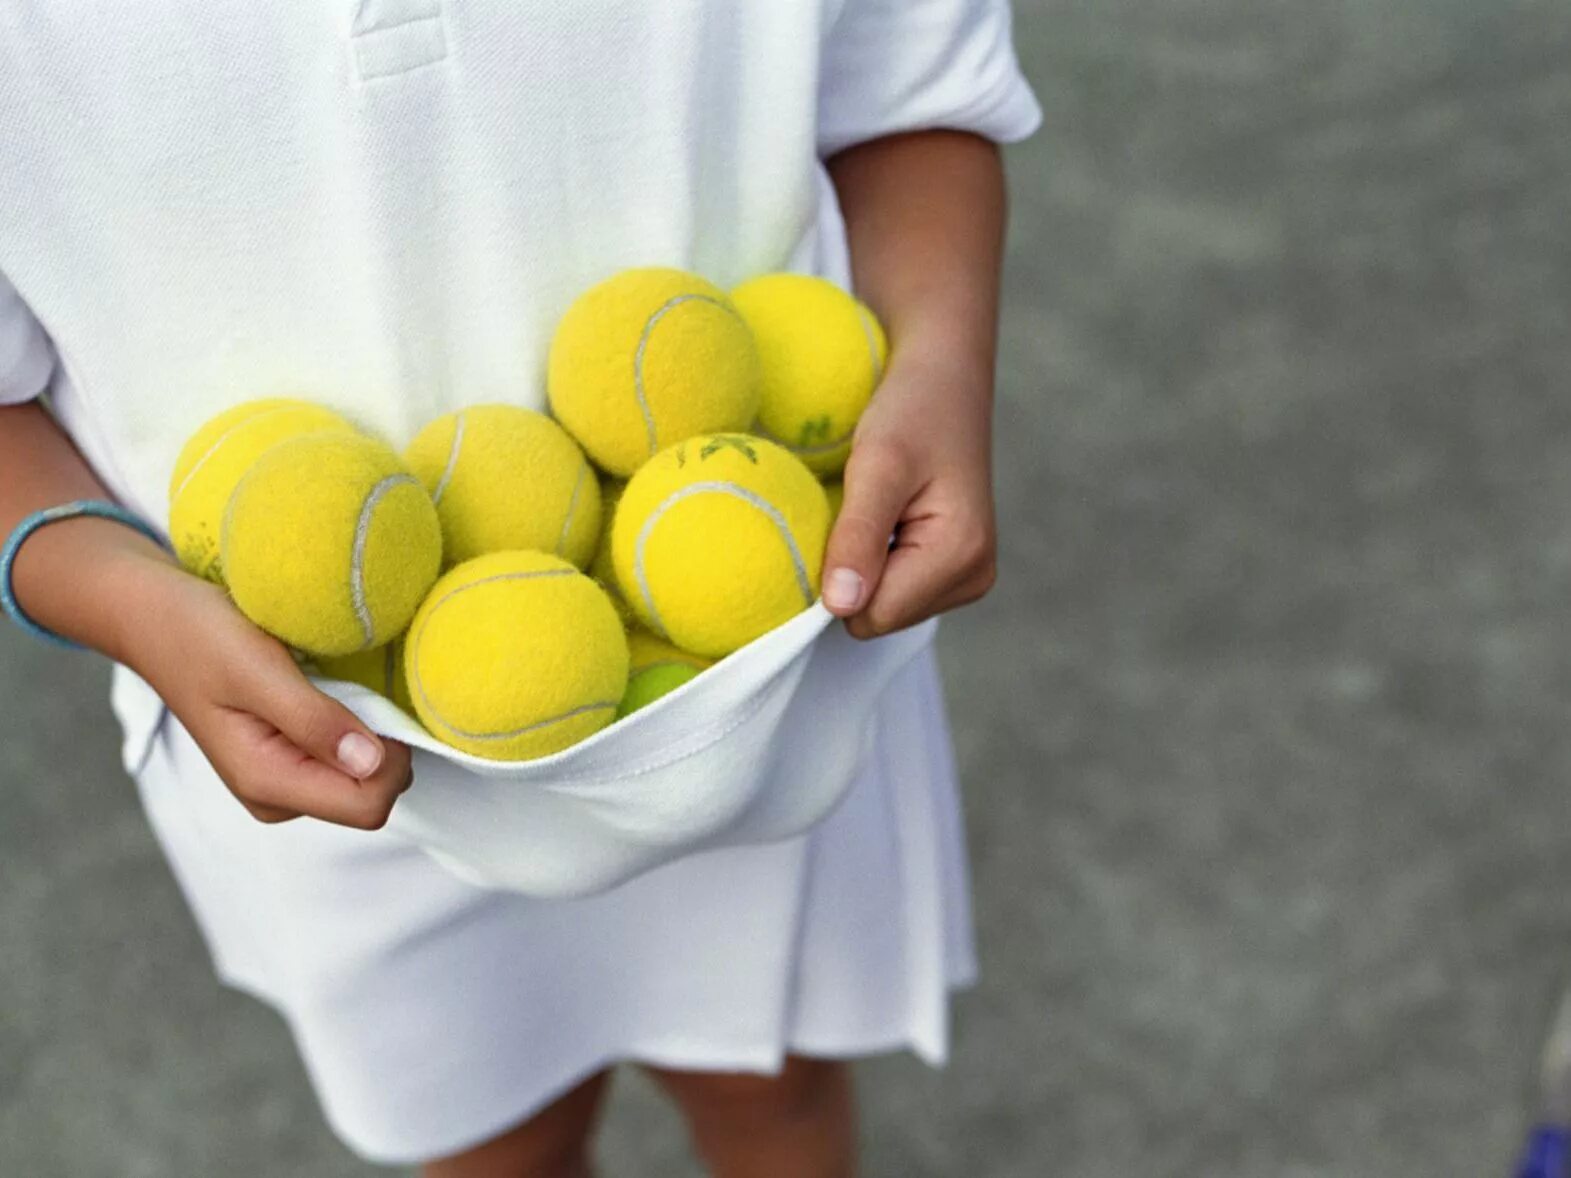 Roll up in a ball. Игры с теннисным мячом. Игры с теннисным мячом для детей. Теннисными мячами для детей в детском саду. Аутисты с теннисными мячами.